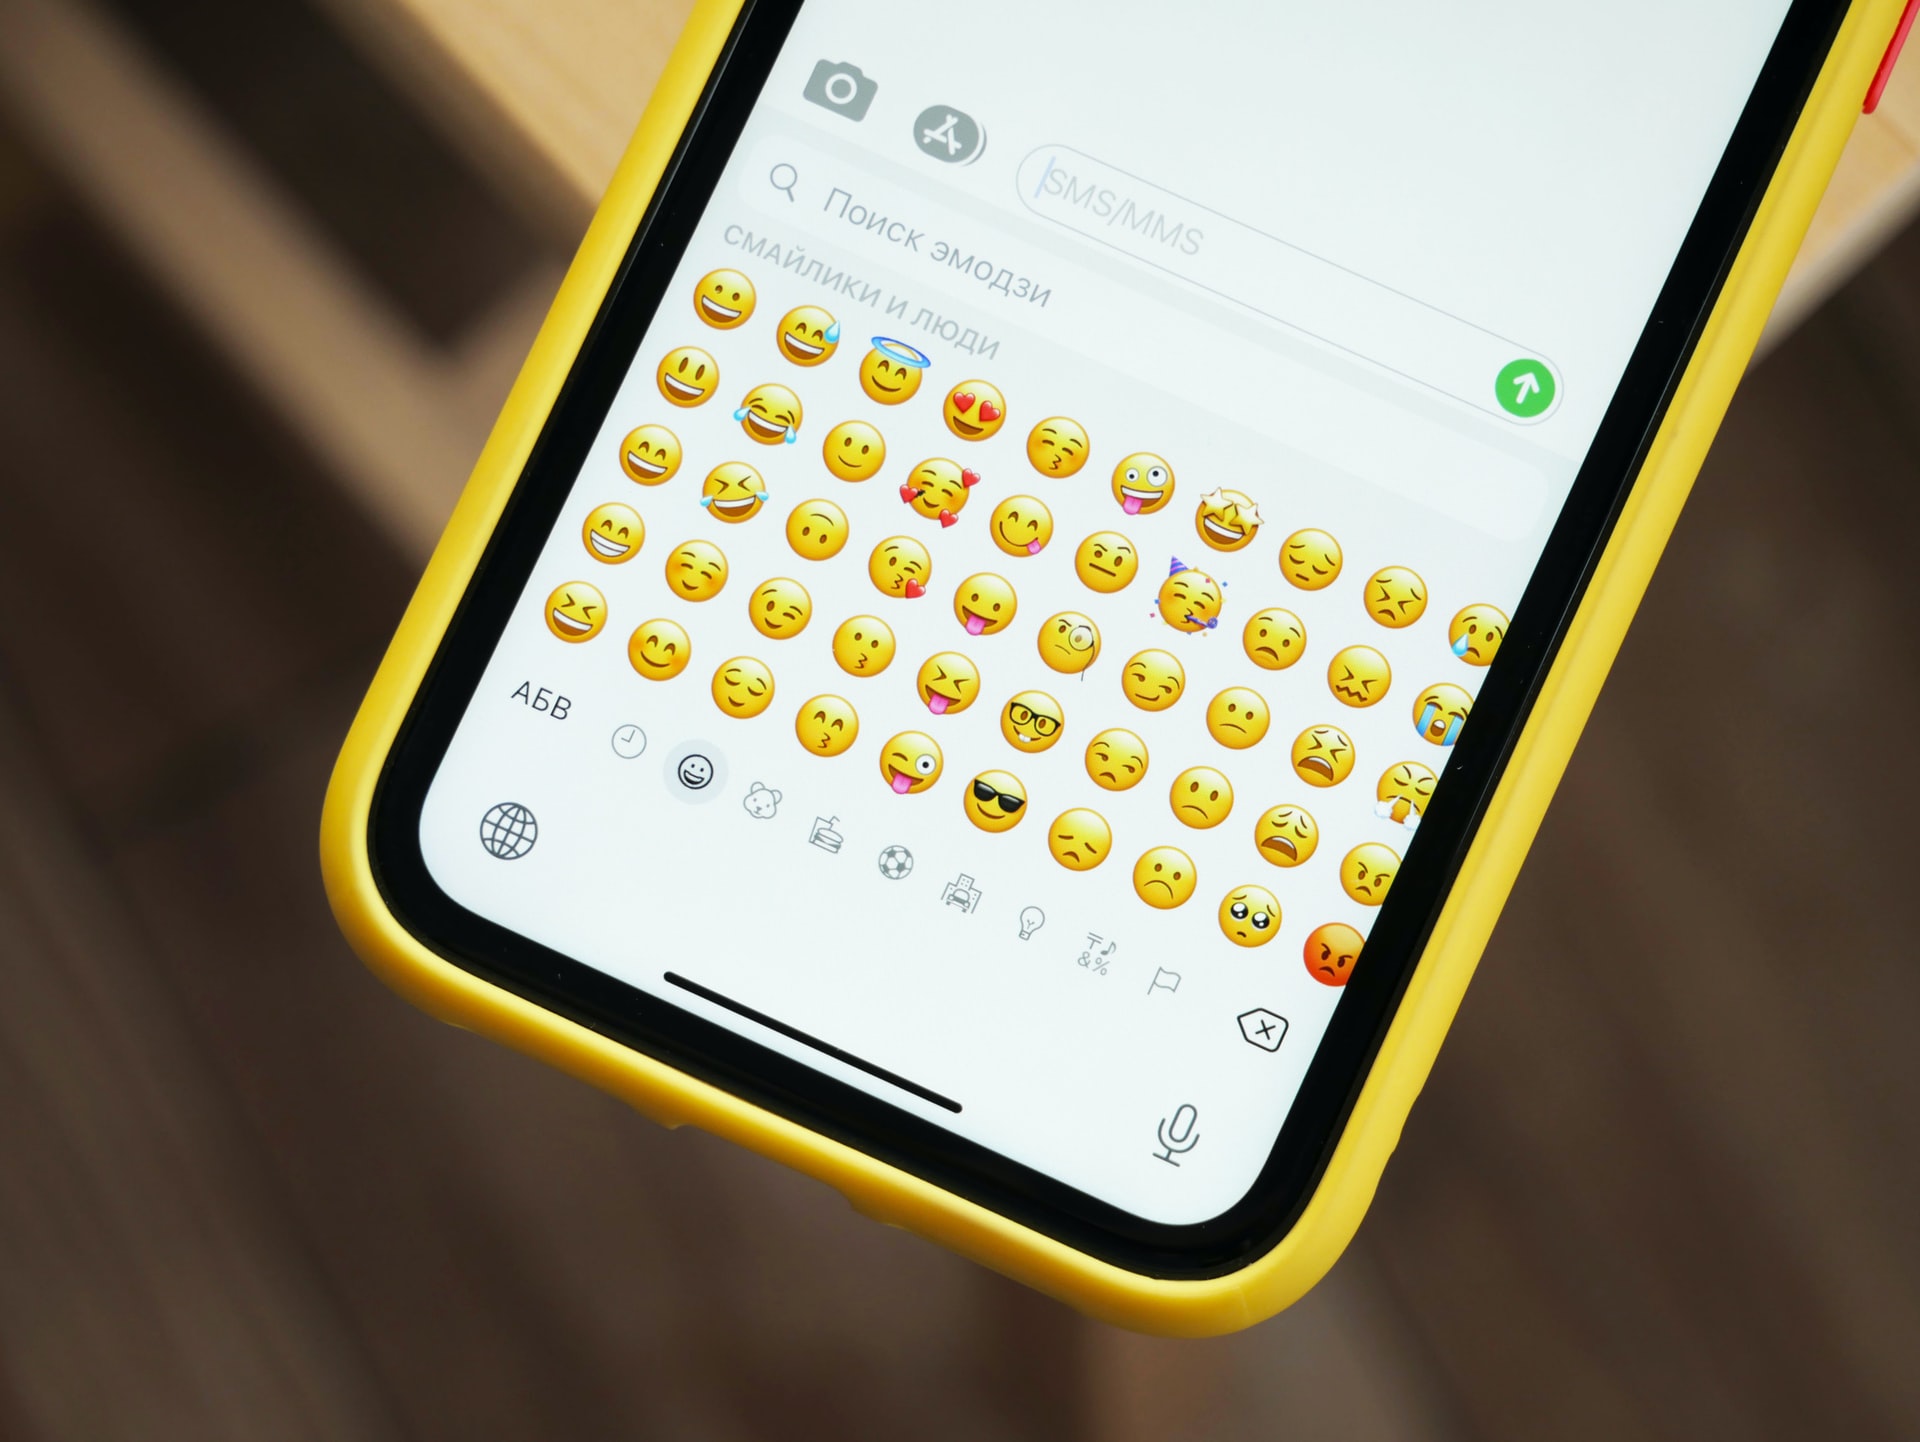 View of a smartphone’s emoji keyboard